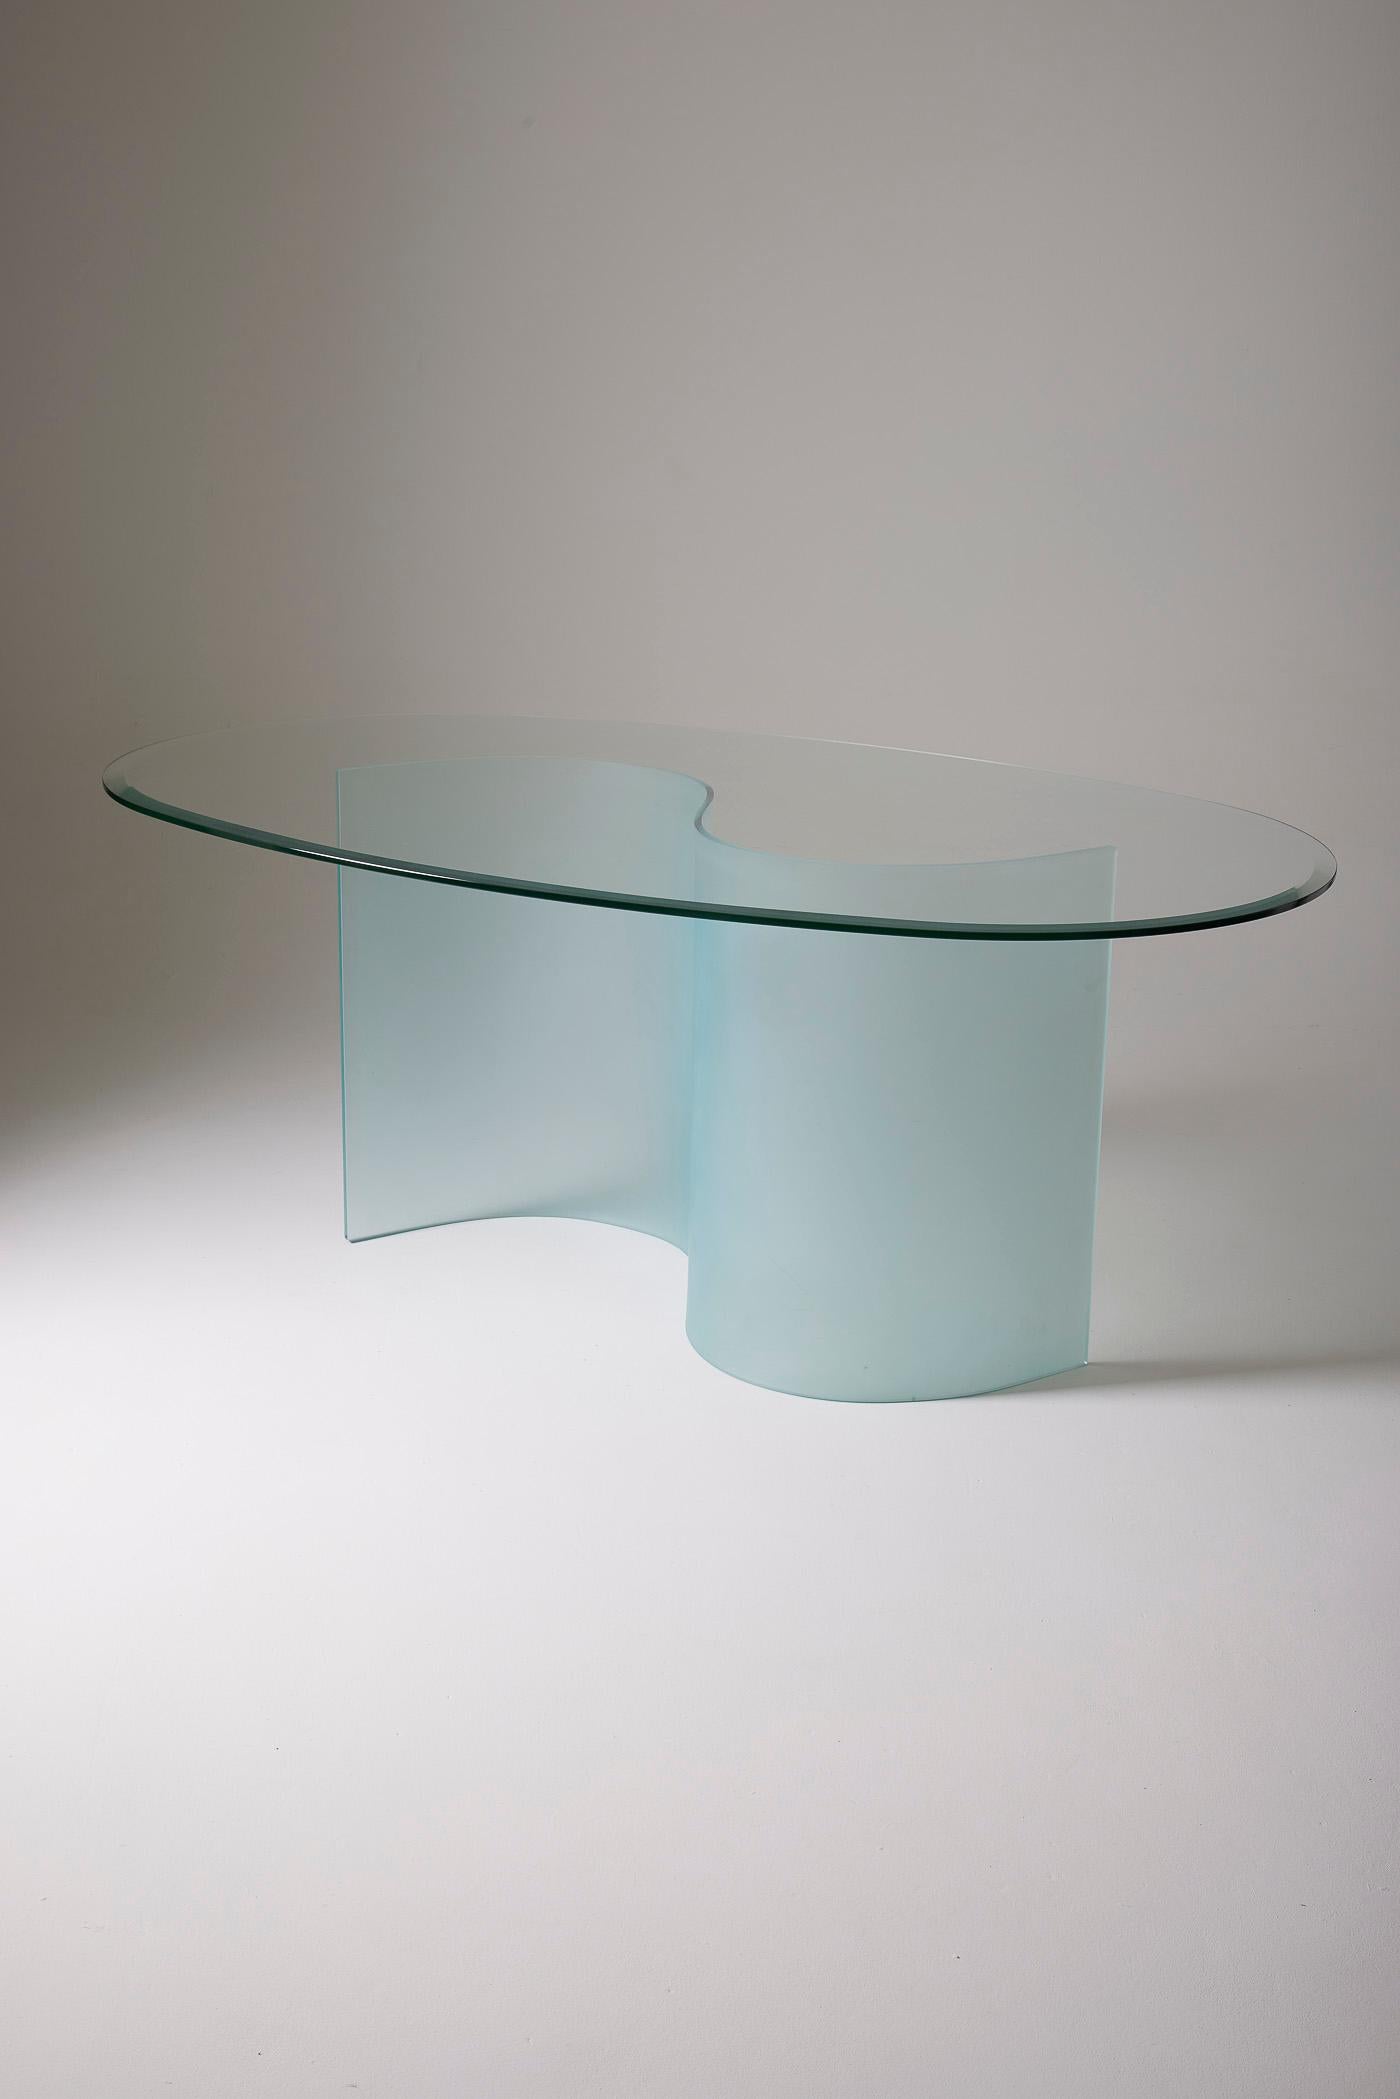 Table de salle à manger en verre dans le style des années 70. Le plateau ovale repose sur une base en forme de S. Très bon état.
LP1525